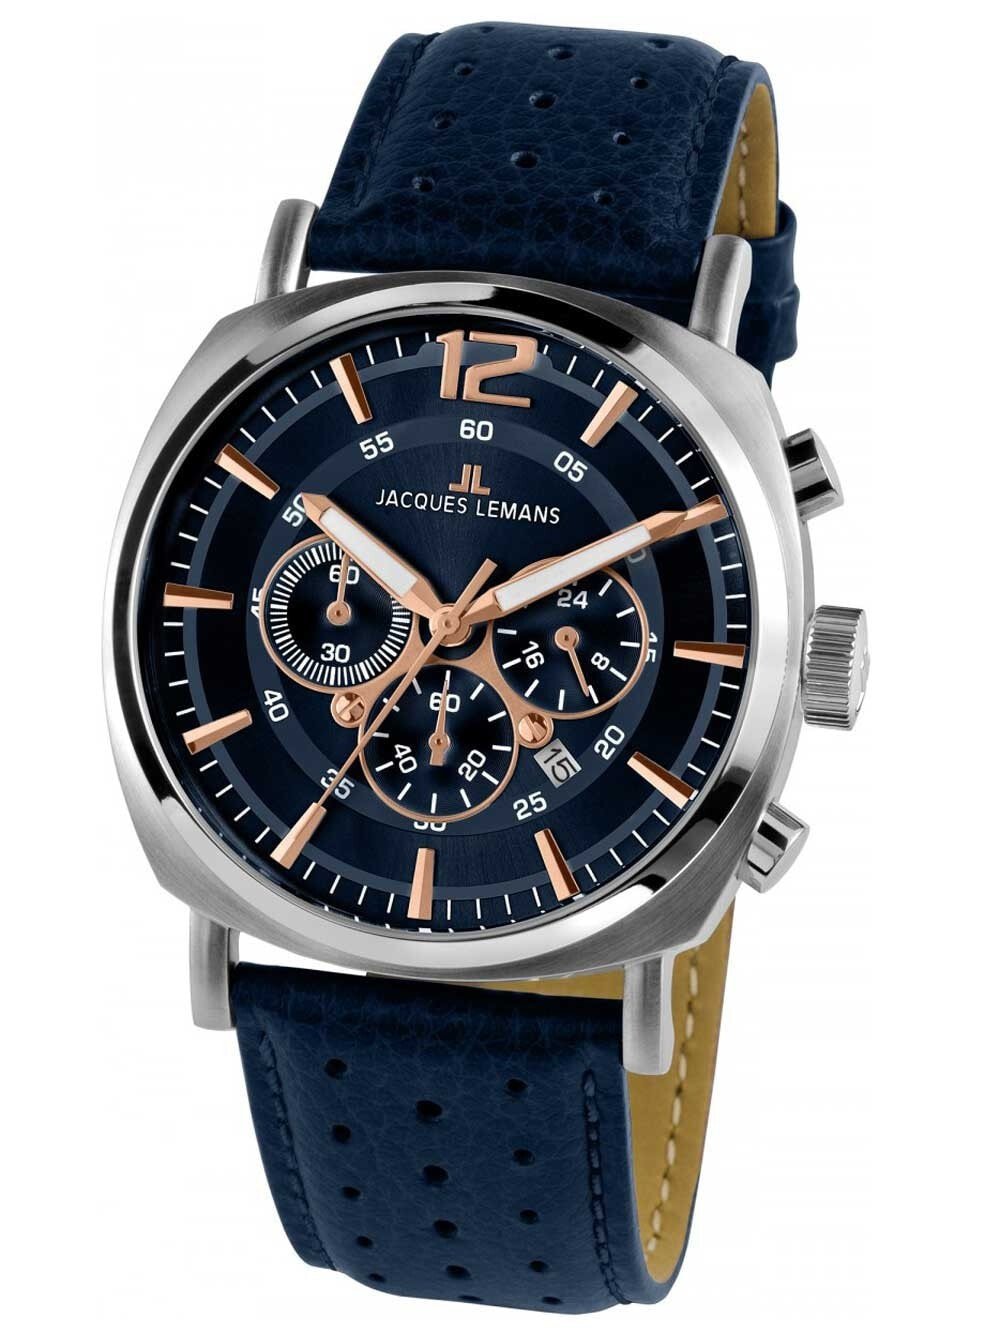 Мужские наручные часы с синим кожаным ремешком  Jacques Lemans 1-1645I Lugano Mens Chronograph 46mm 10 ATM